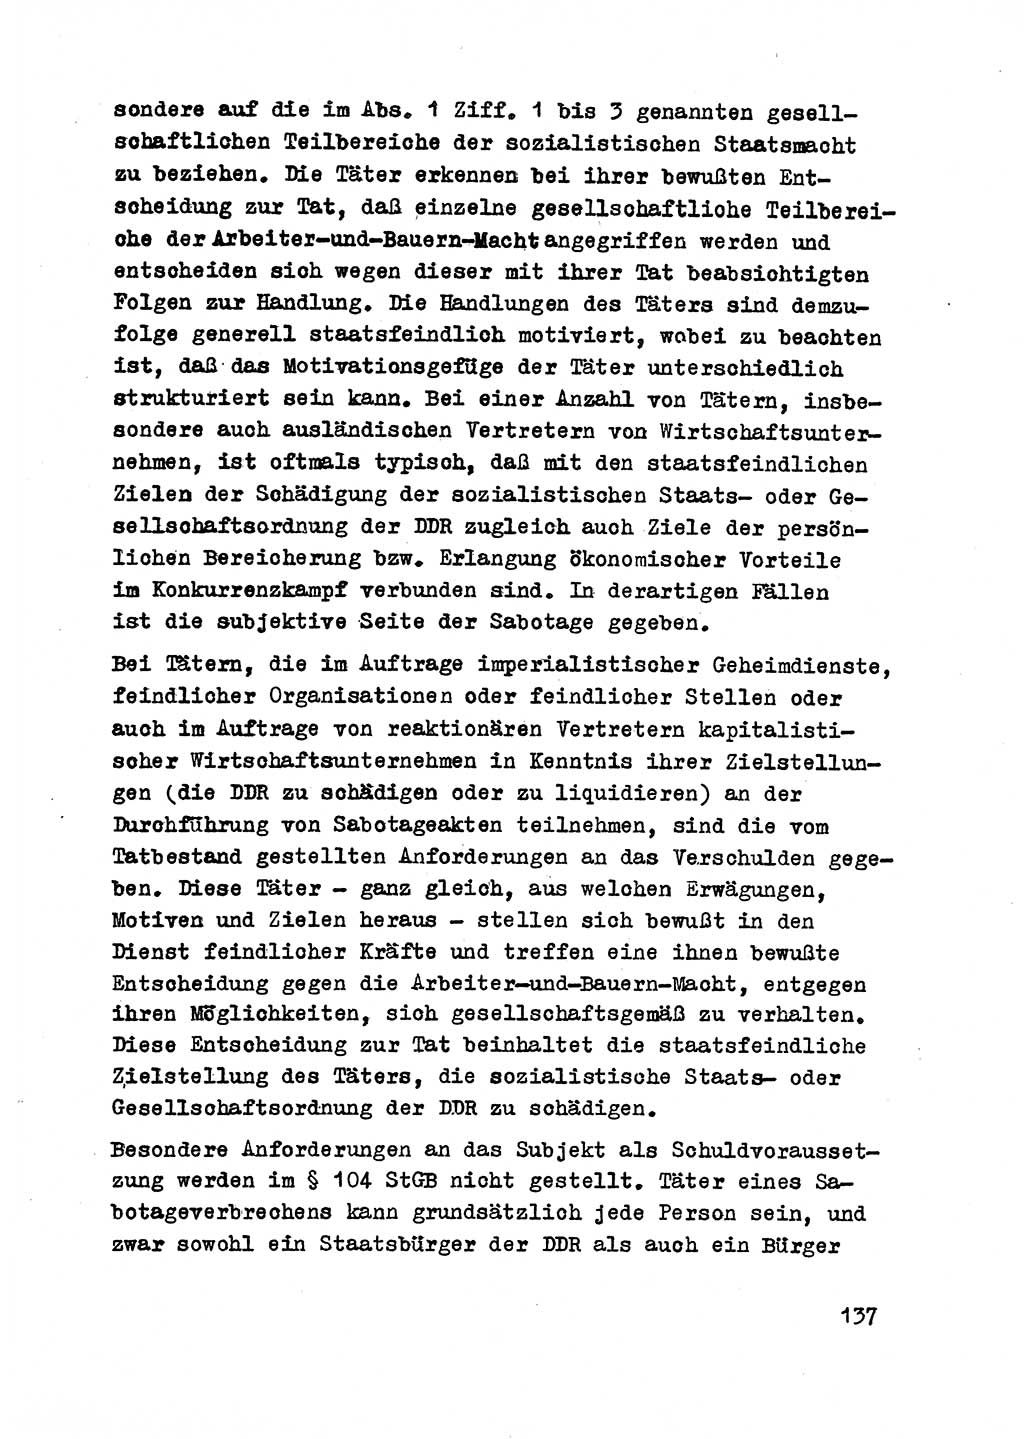 Strafrecht der DDR (Deutsche Demokratische Republik), Besonderer Teil, Lehrmaterial, Heft 2 1969, Seite 137 (Strafr. DDR BT Lehrmat. H. 2 1969, S. 137)